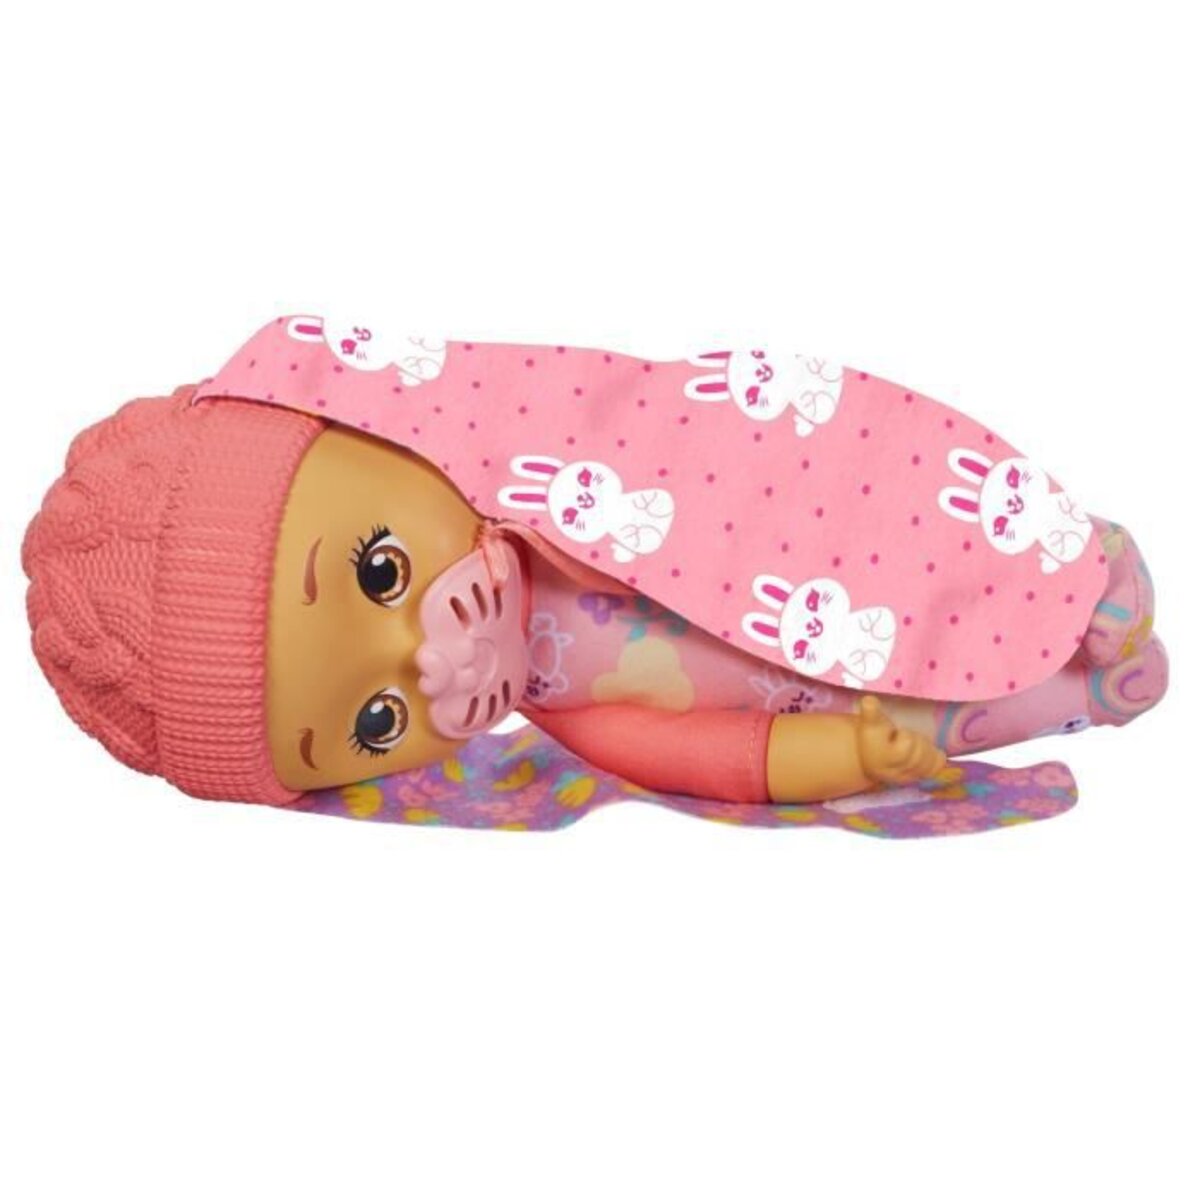 My Garden Baby poupée bébé Lapin Premières dents, 30 cm, poupon avec 3  accessoires et tenue 2 en 1, bonnet rose, jouet pour enfant dès 2 ans, HGC11